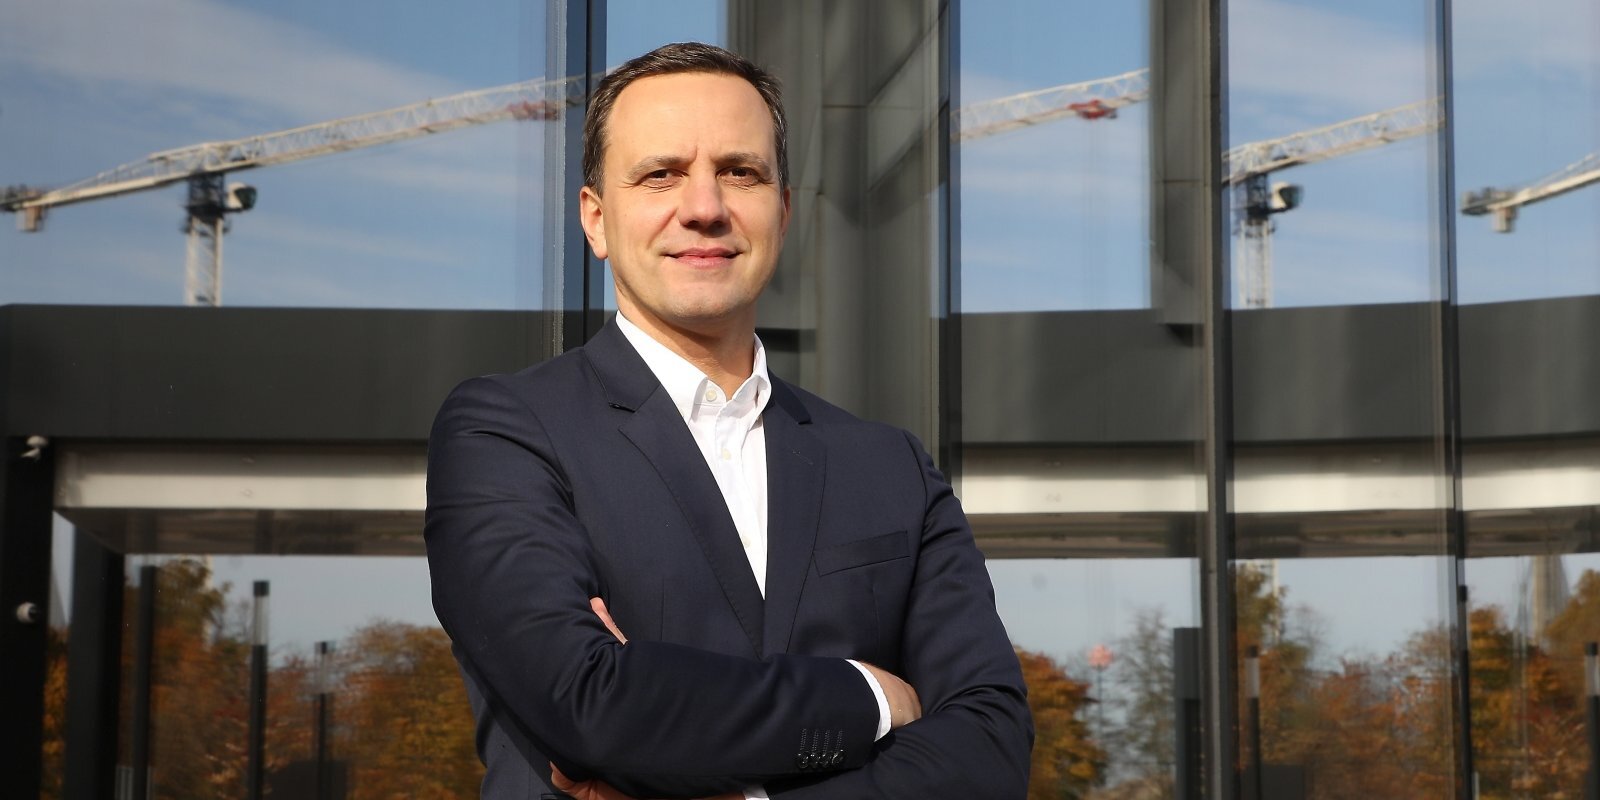 Personība biznesā: VAS 'Valsts nekustamie īpašumi' valdes priekšsēdētājs Renārs Griškevičs